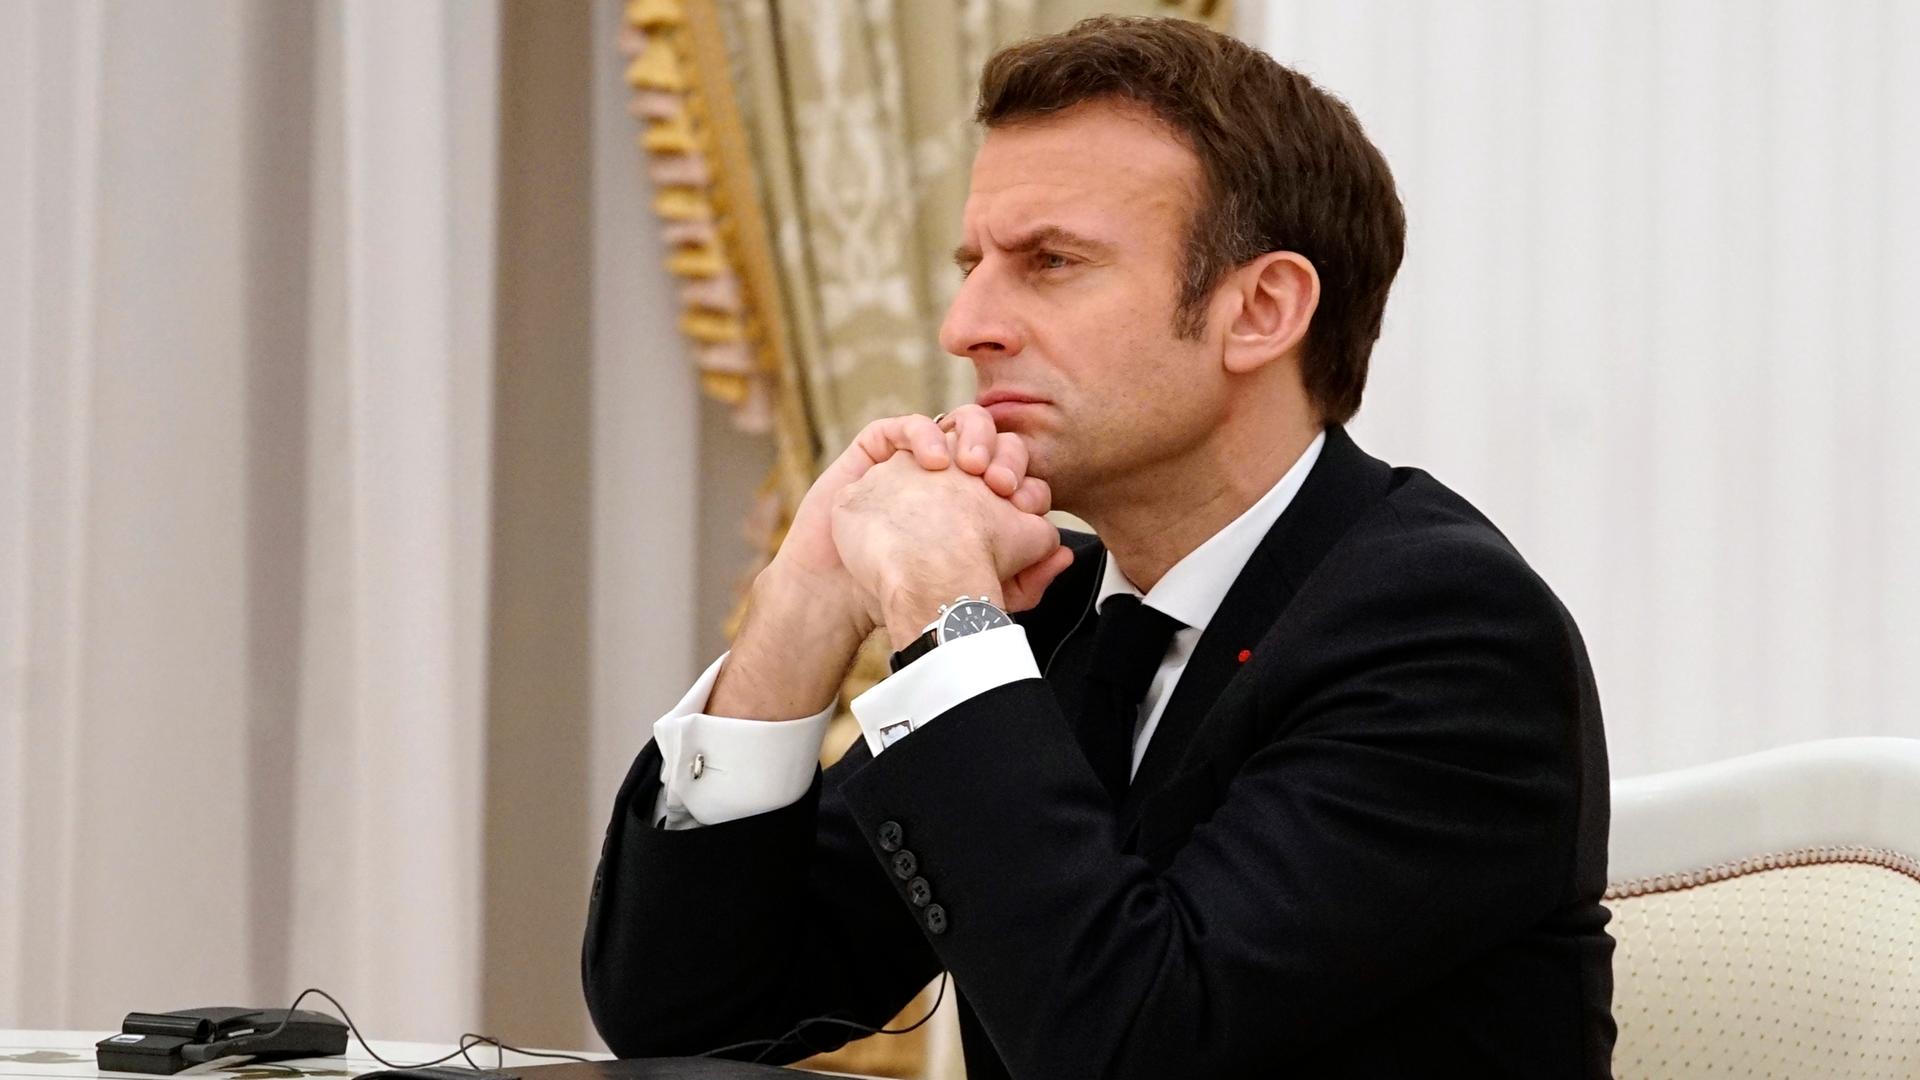 Der französische Präsident Emmanuel Macron sitzt mit ernstem Blick, den Kopf auf die gefalteten Hände gestützt, an einem Verhandlungstisch im Kreml. Hinter ihm: die goldene Borte eines Vorhangs.